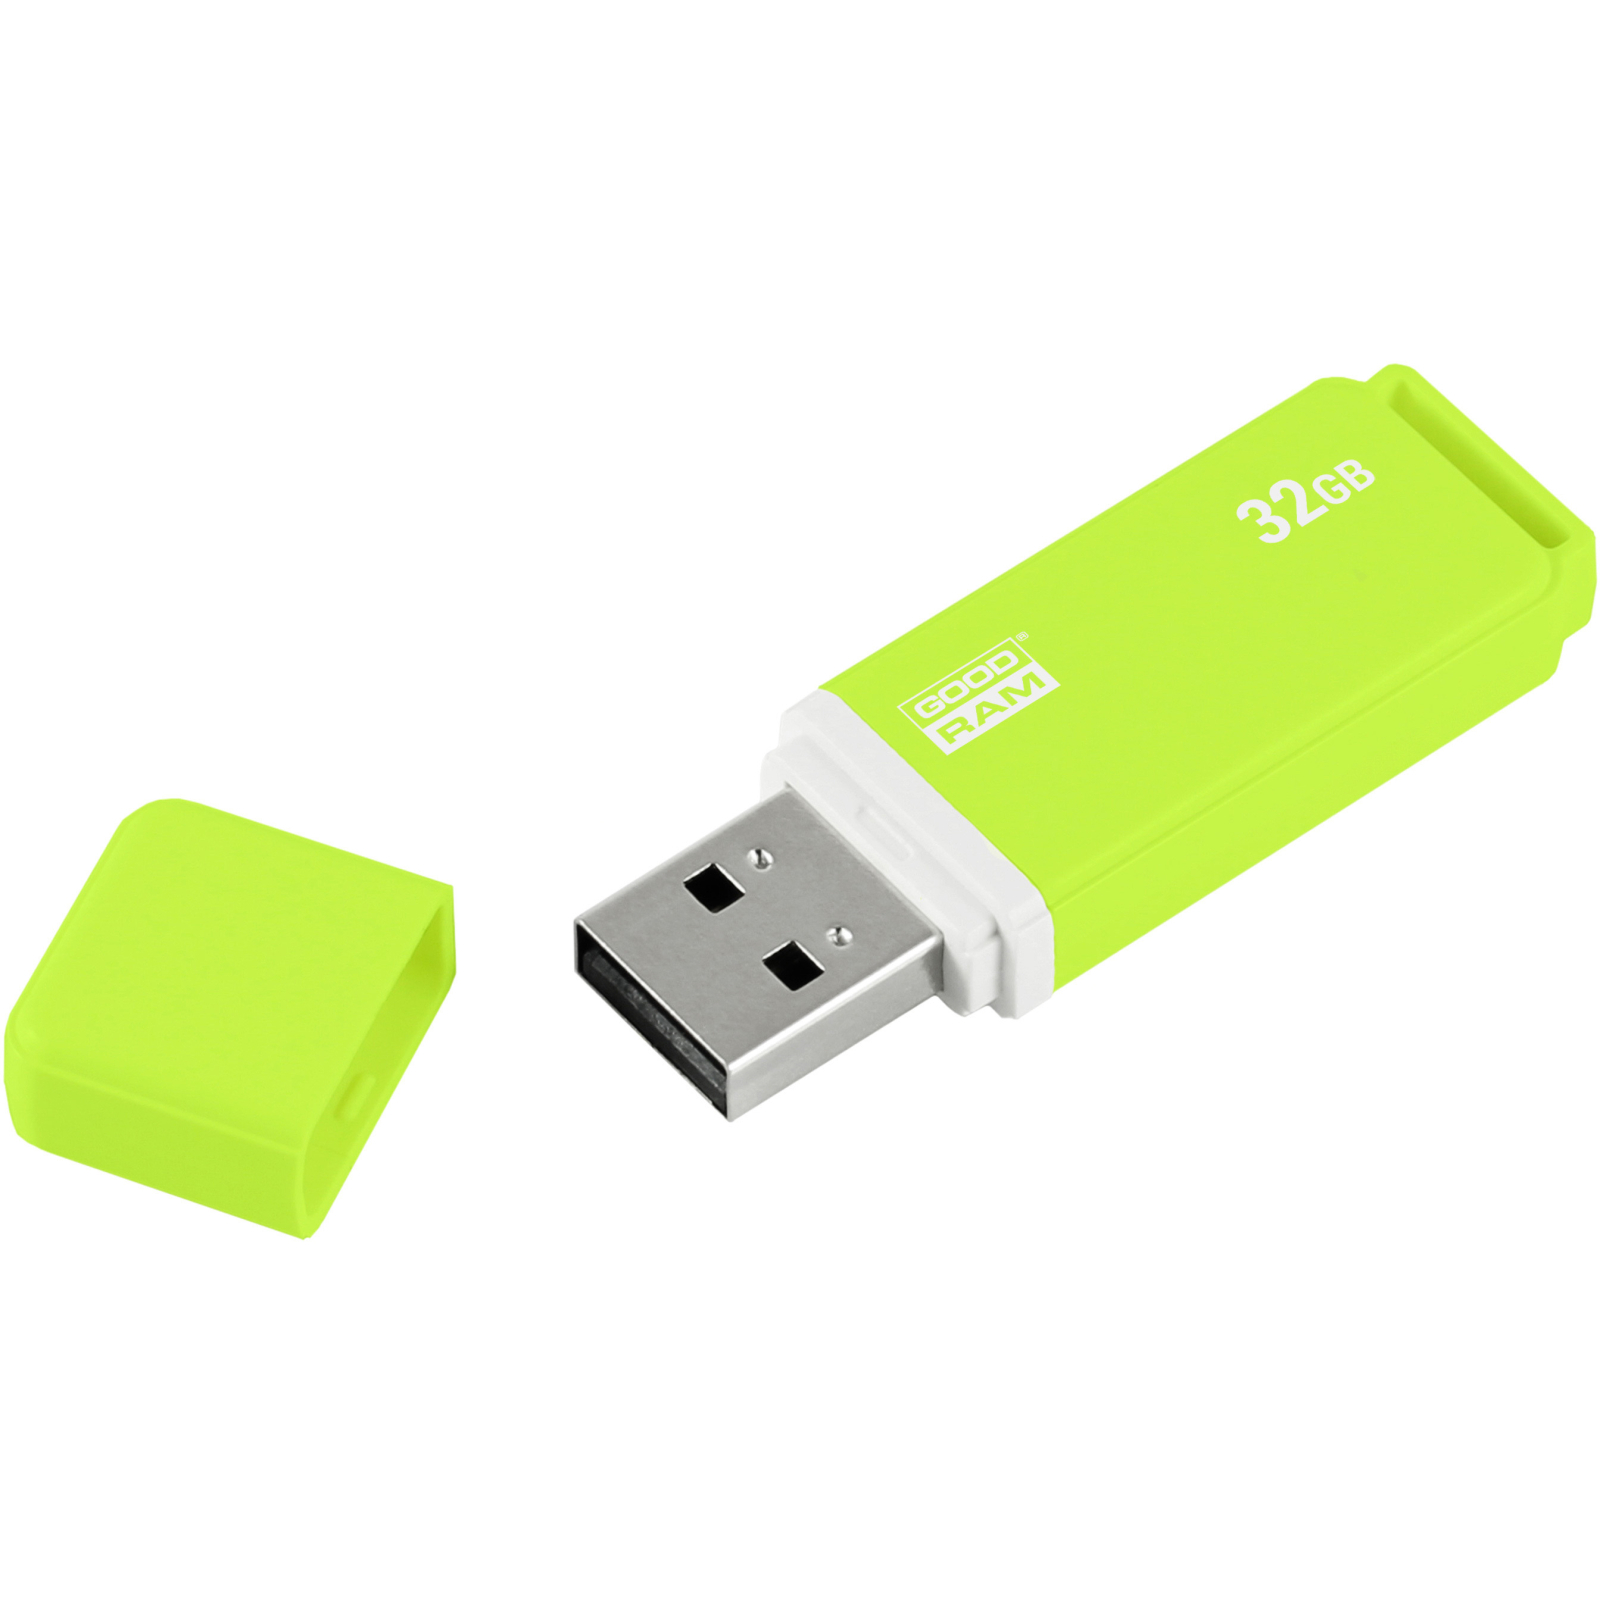 USB флеш накопитель Goodram 32GB UMO2 Orange Green USB 2.0 (UMO2-0320OGR11) изображение 3